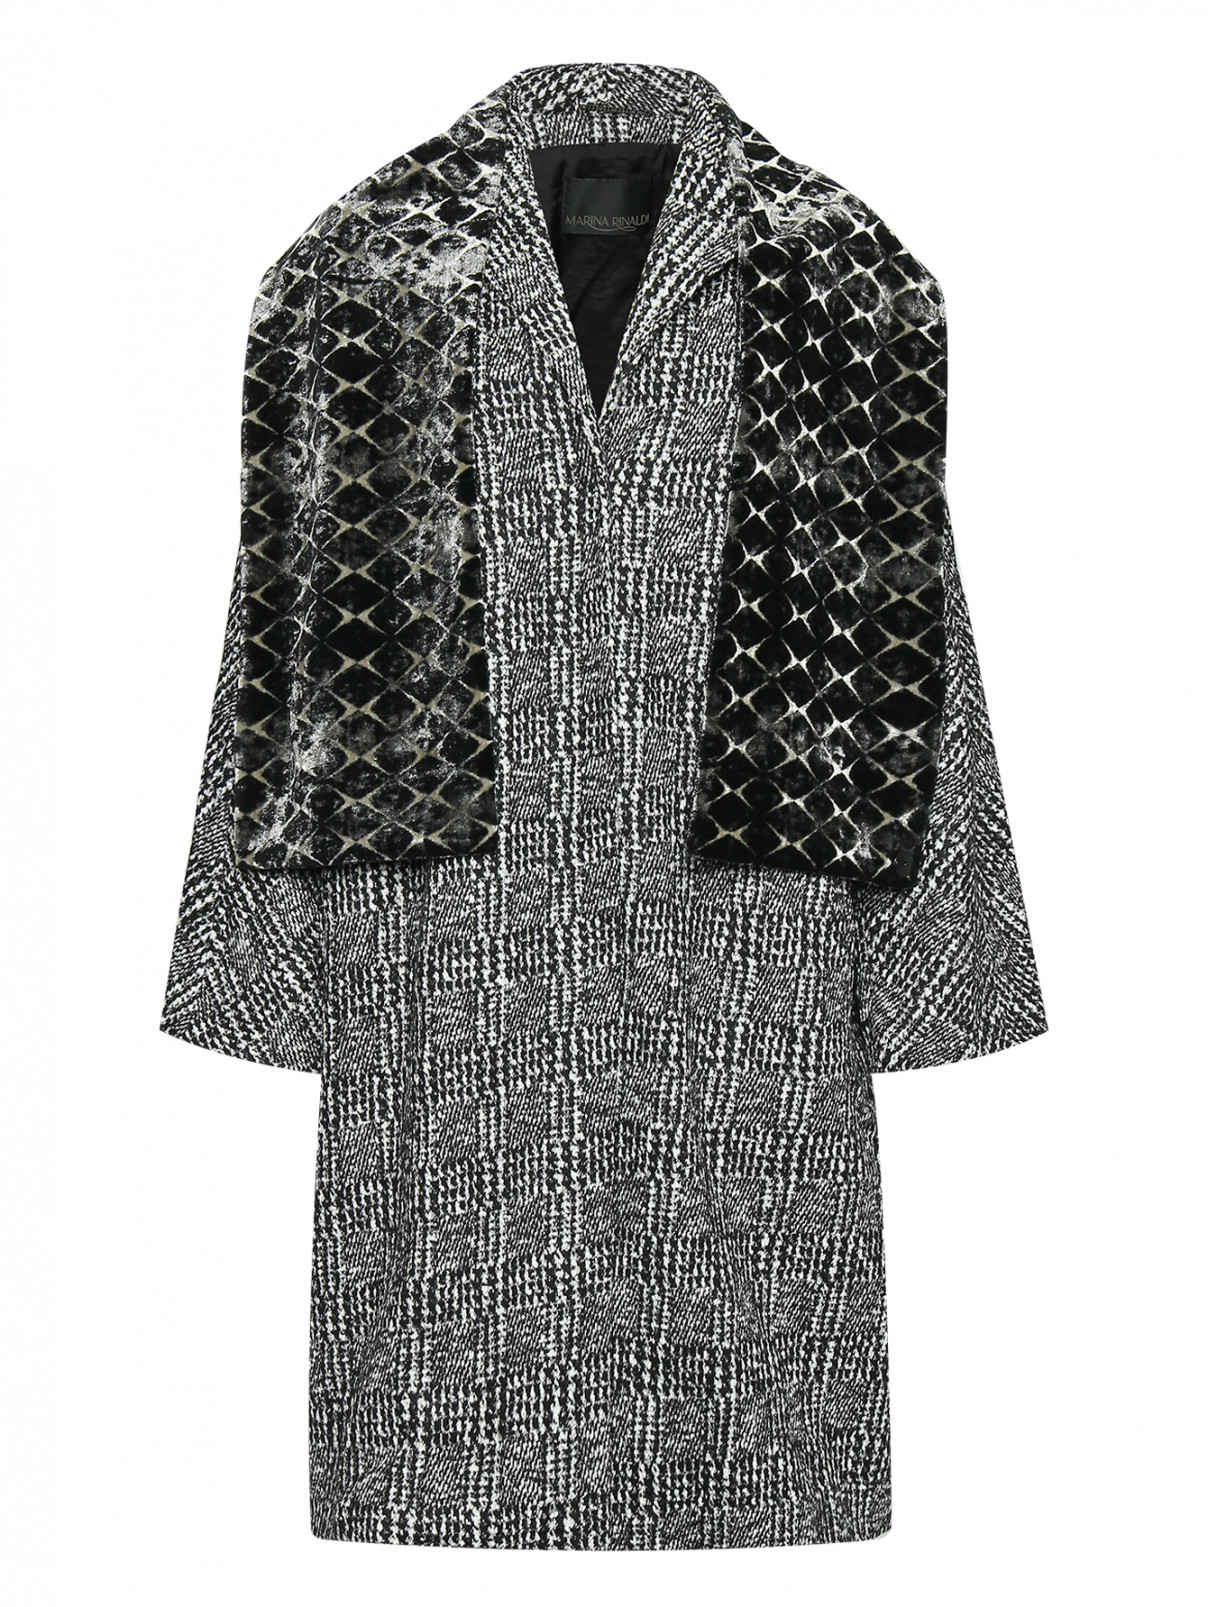 Пальто из шерсти с шарфом Marina Rinaldi  –  Общий вид  – Цвет:  Серый